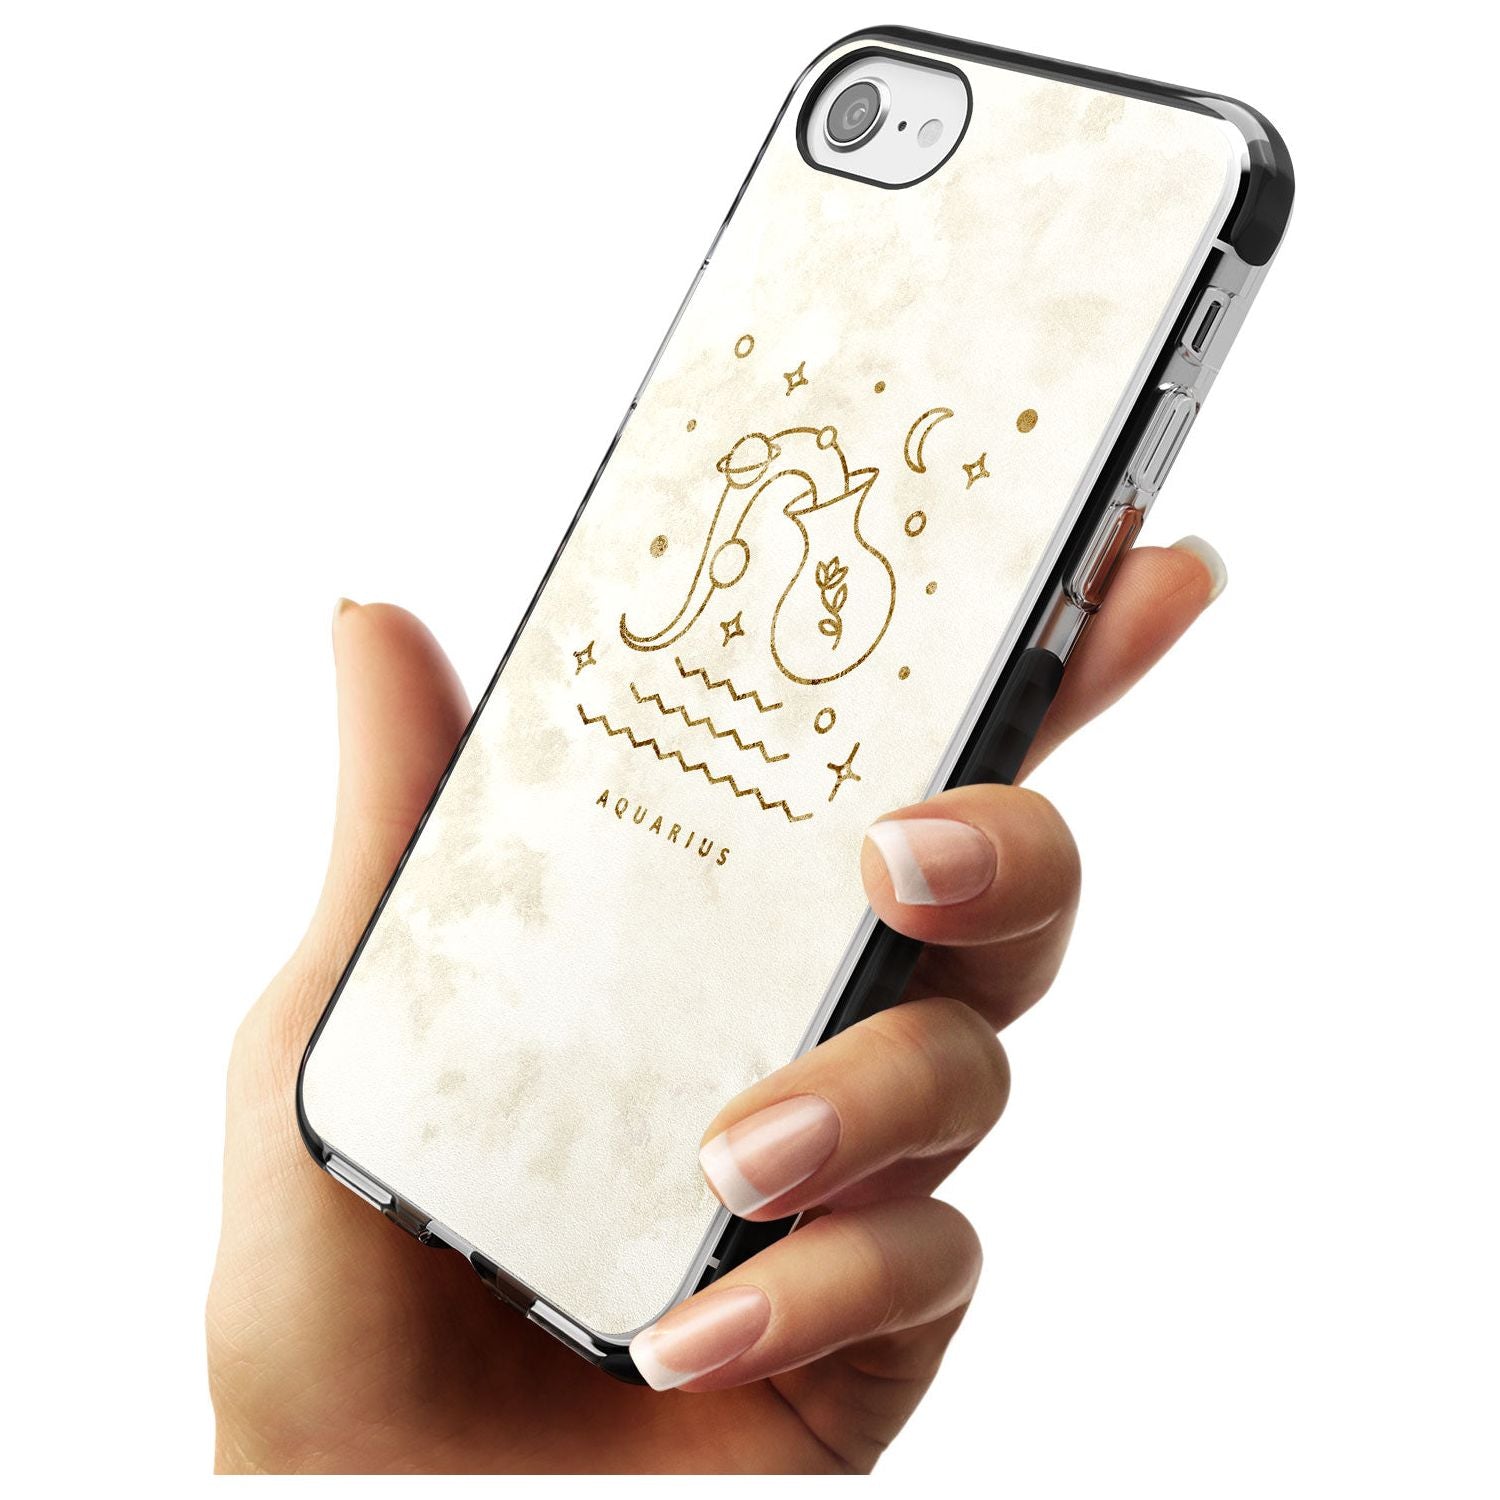 Aquarius Emblem - Solid Gold Marbled Design Black Impact Phone Case for iPhone SE 8 7 Plus